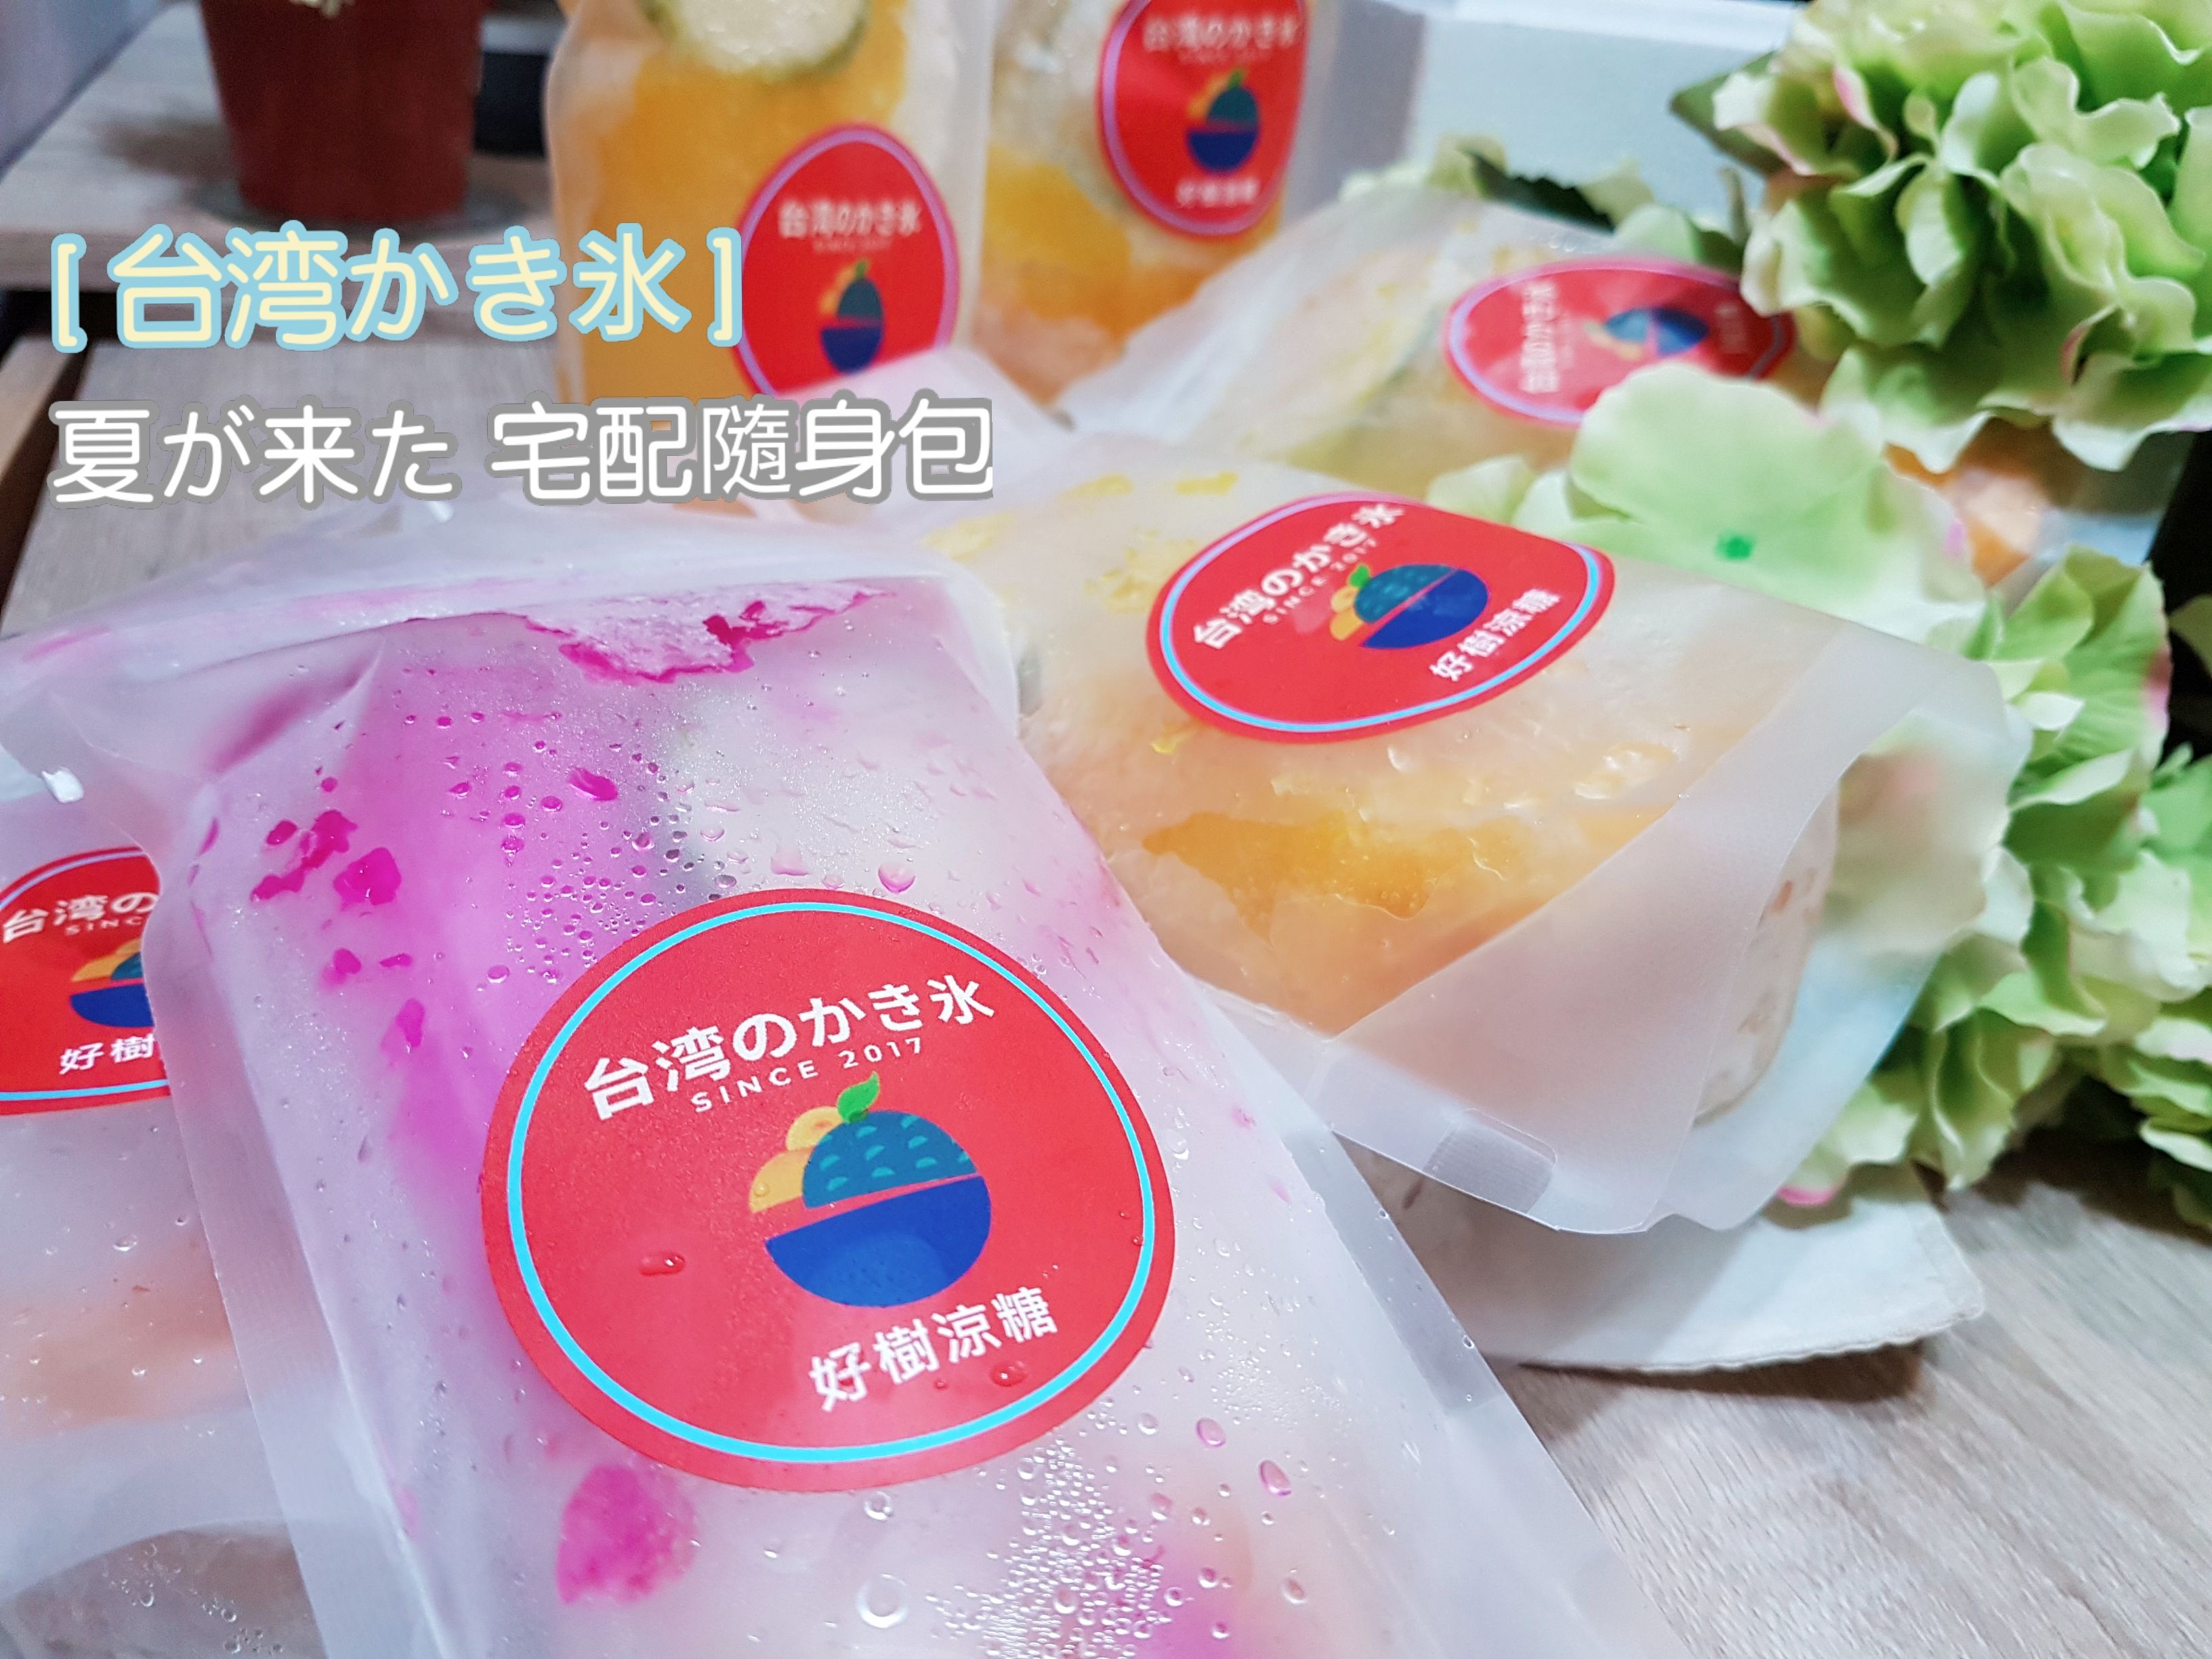 天然水果醬 【刨冰】:一組四入，4種純果醬刨冰在家吃，完全解凍可變成消暑飲料。